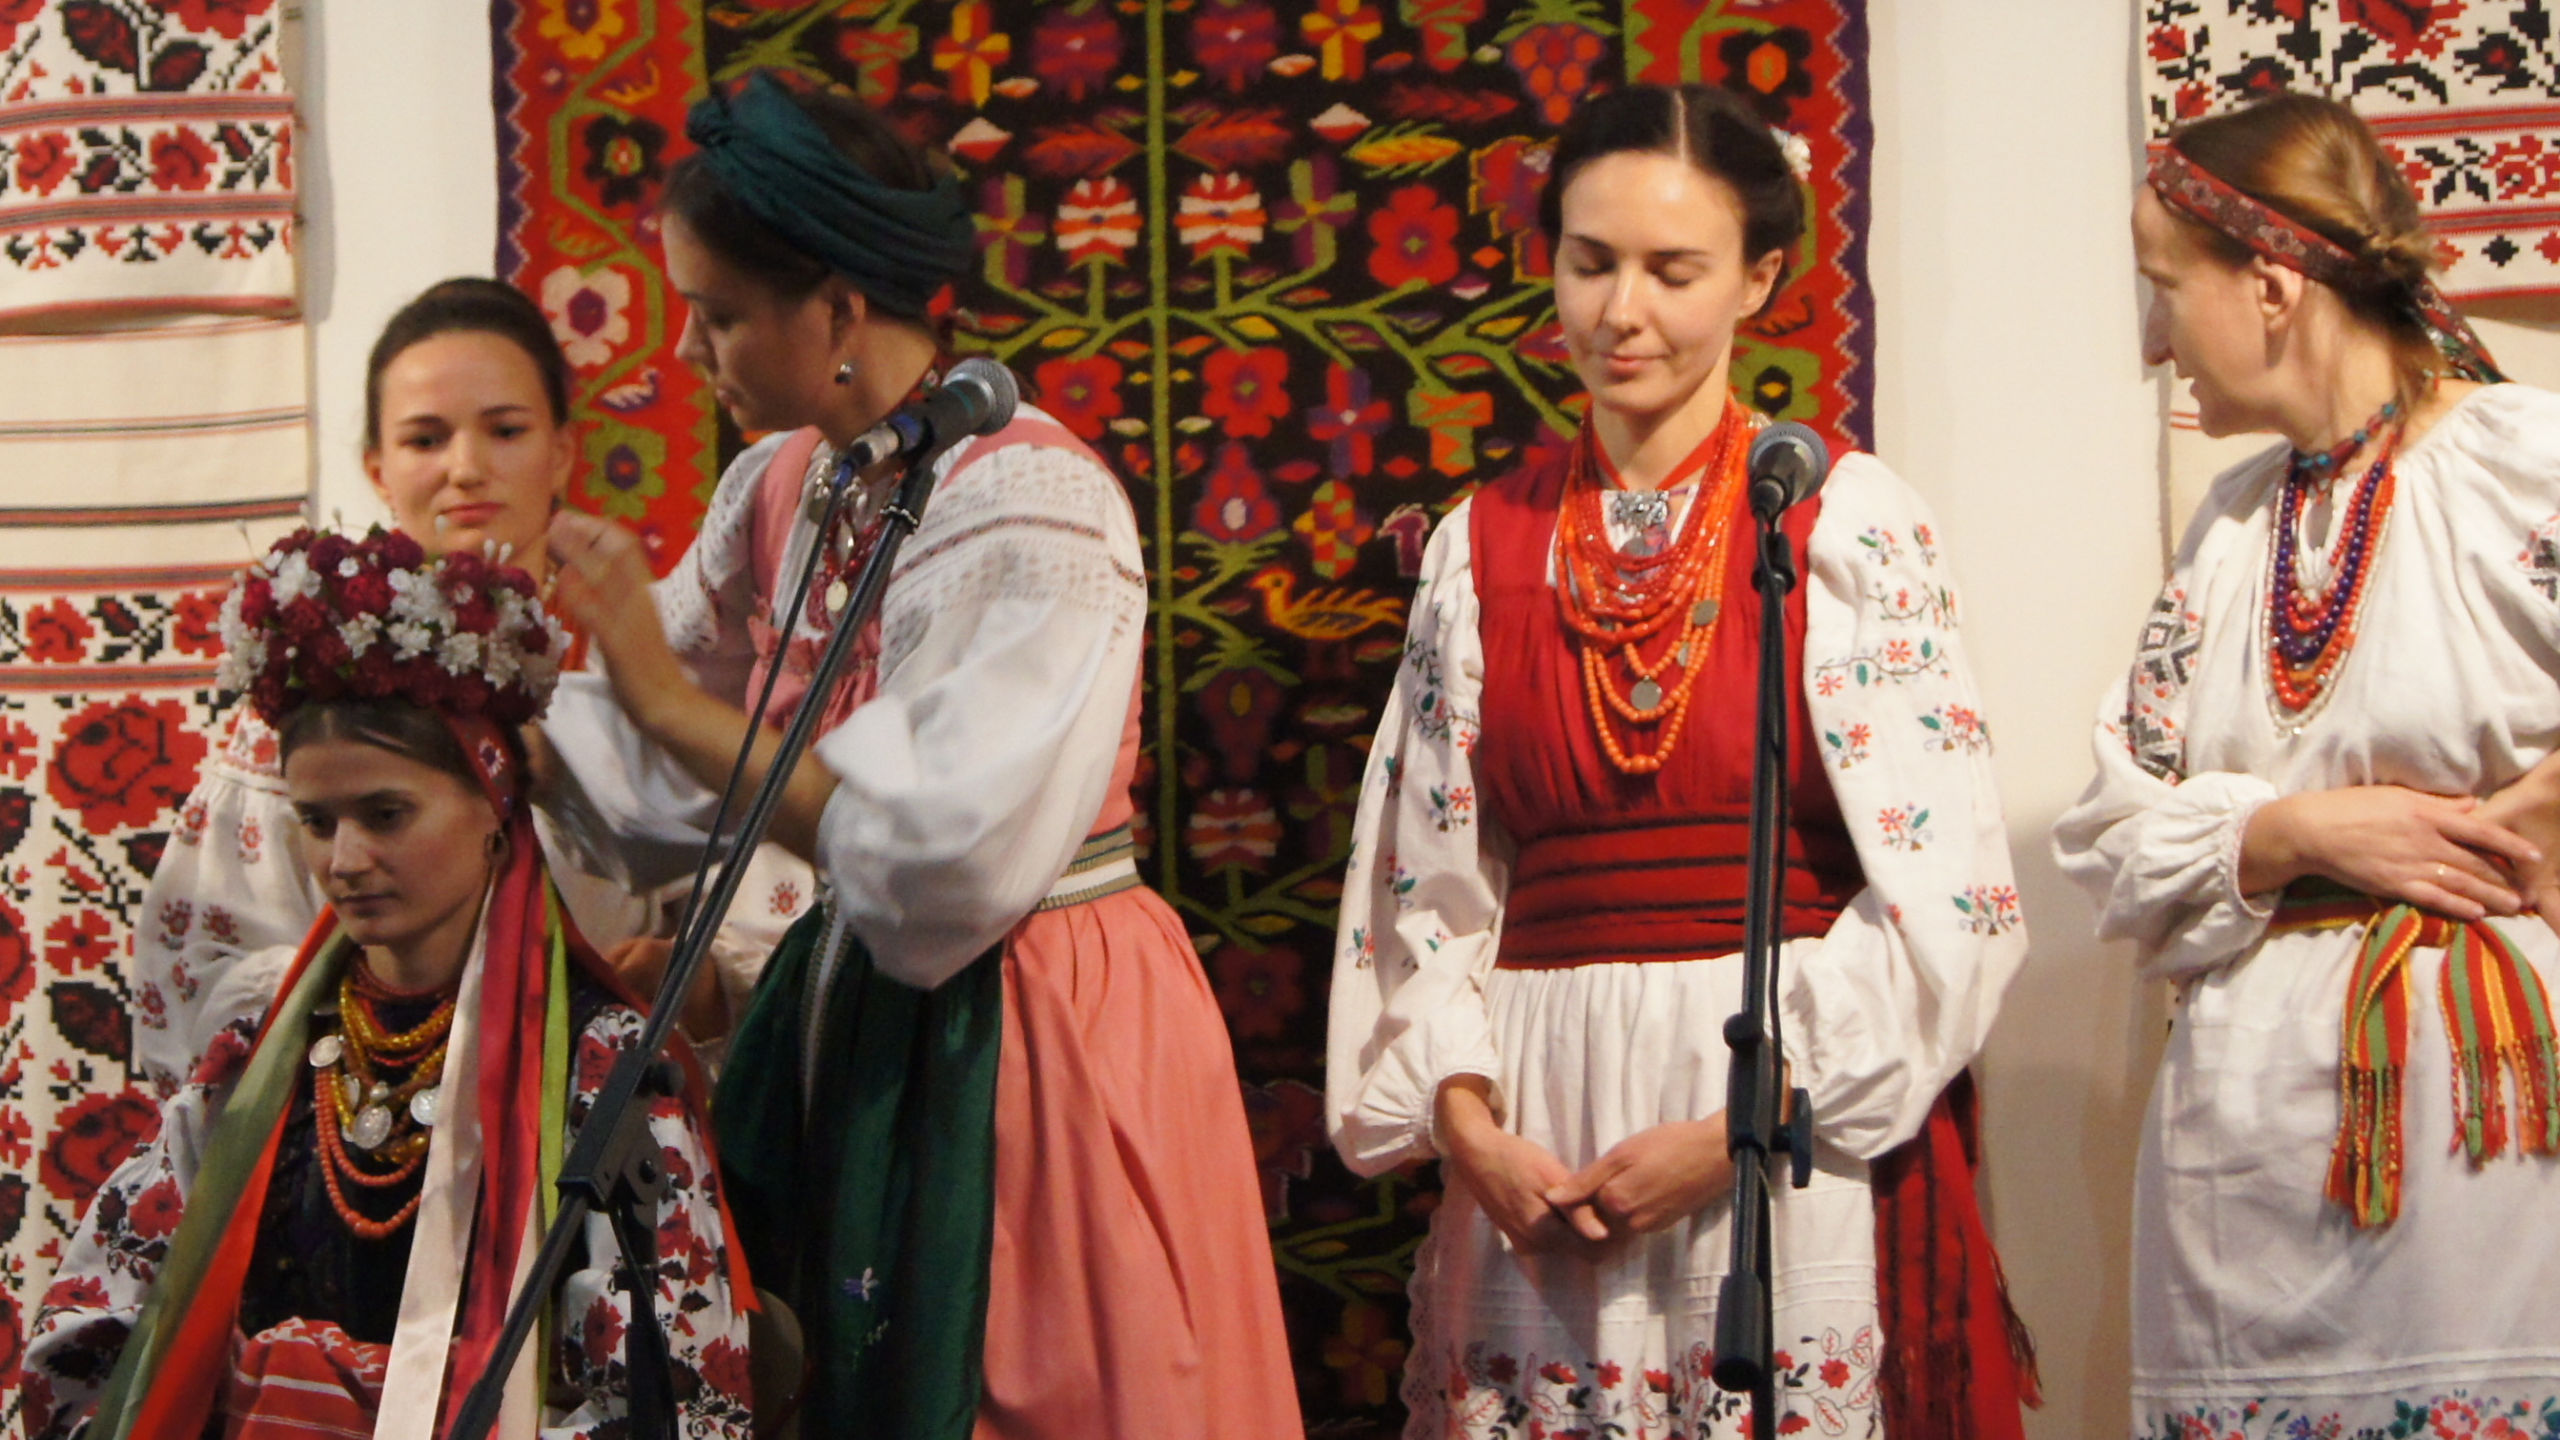 A Ukrainian Wedding — Meet The Soloists